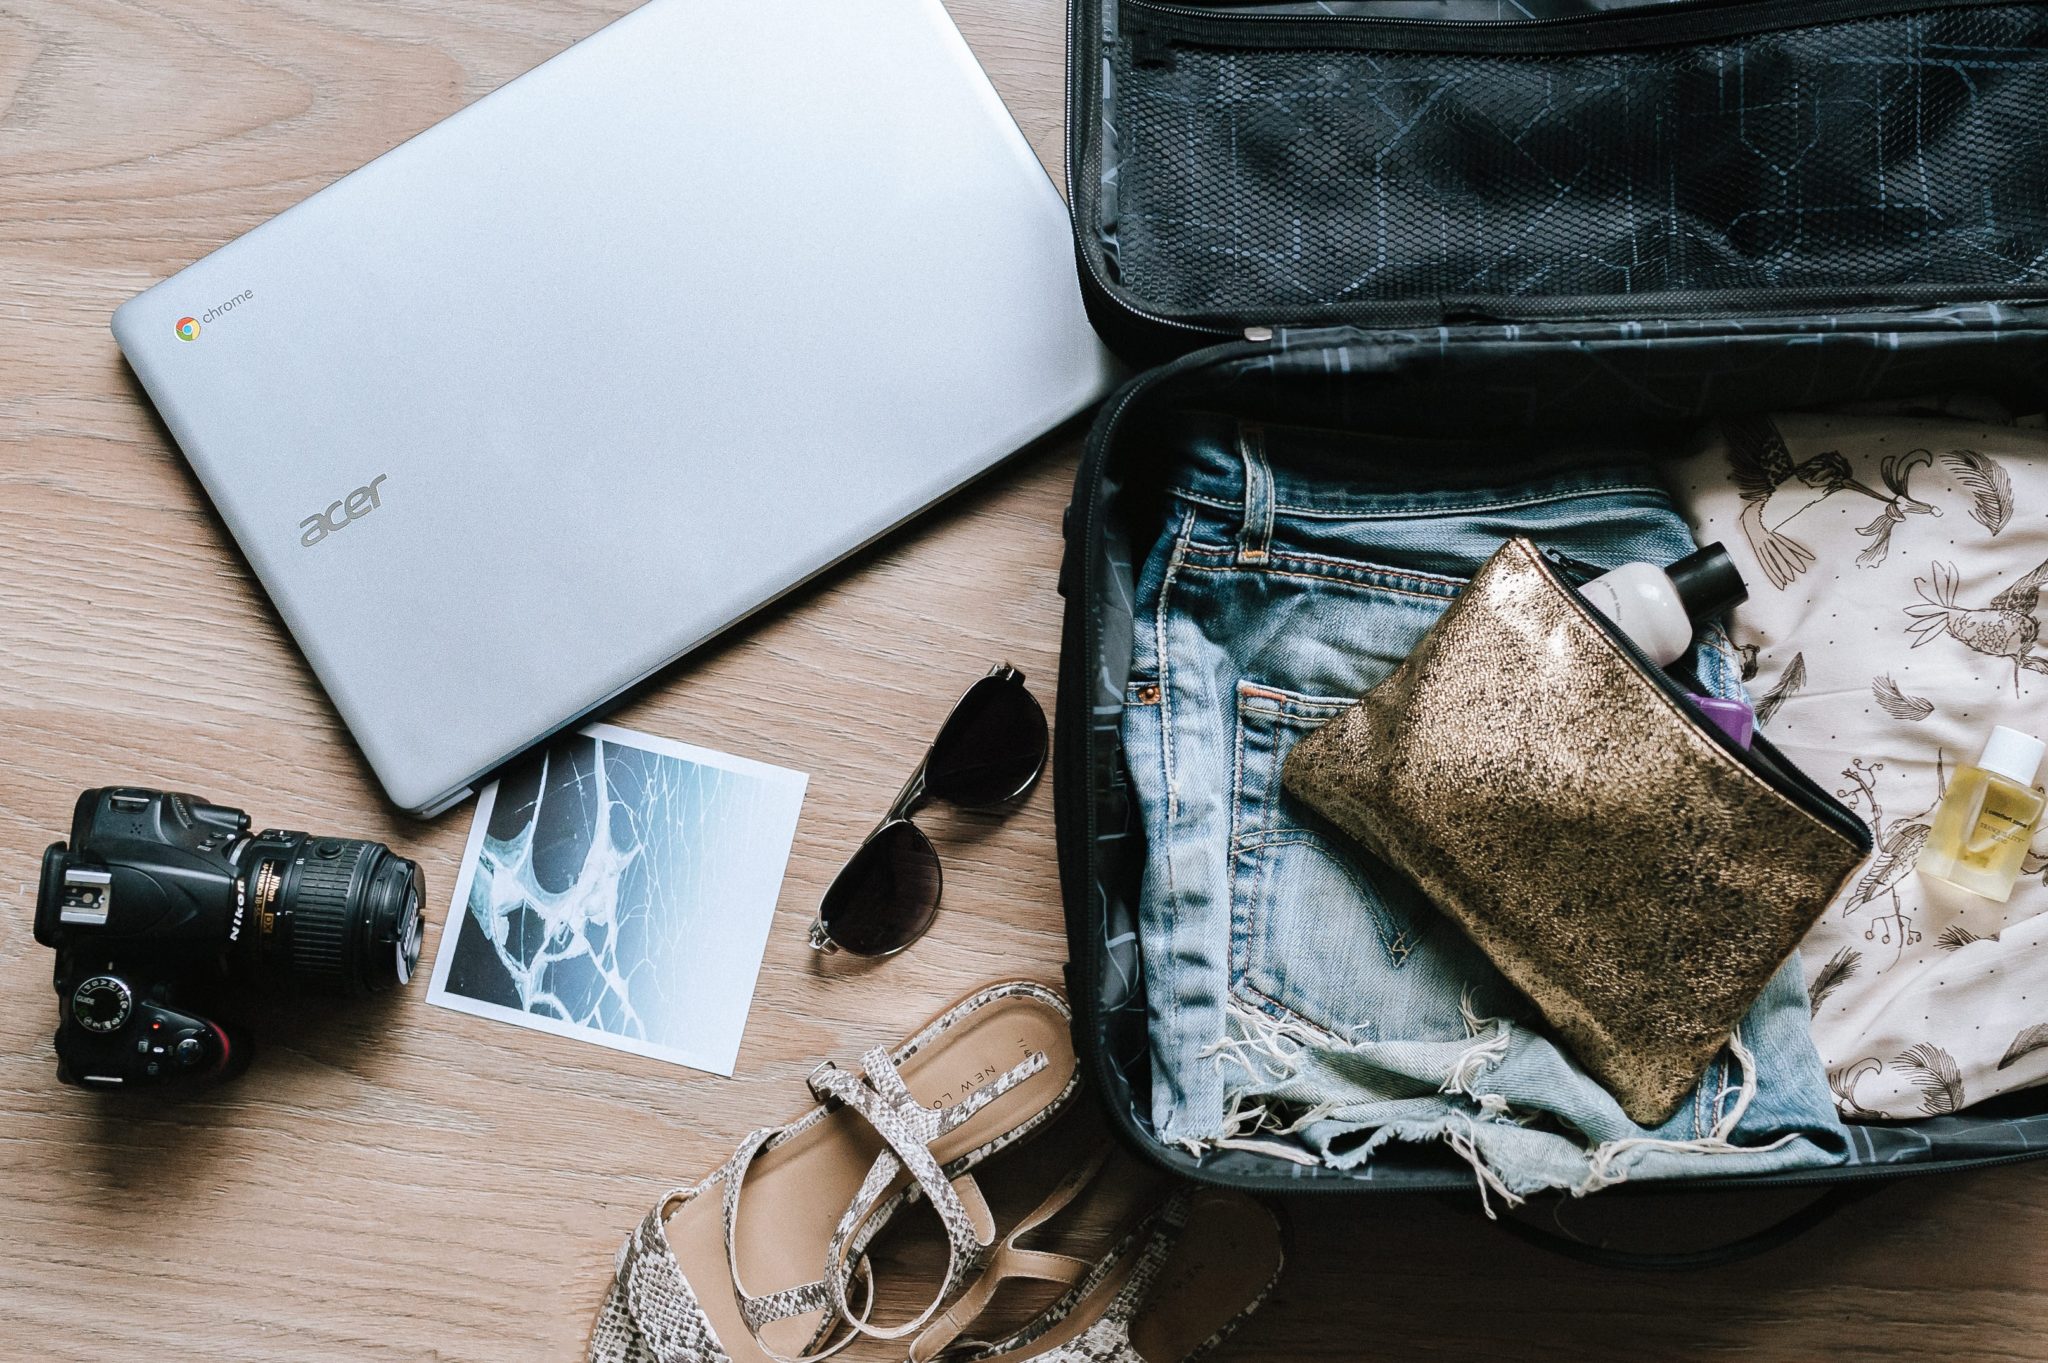 Rozpięta walizka leżąca na ziemi, obok ubrania, okulary przeciwsłoneczne i laptop